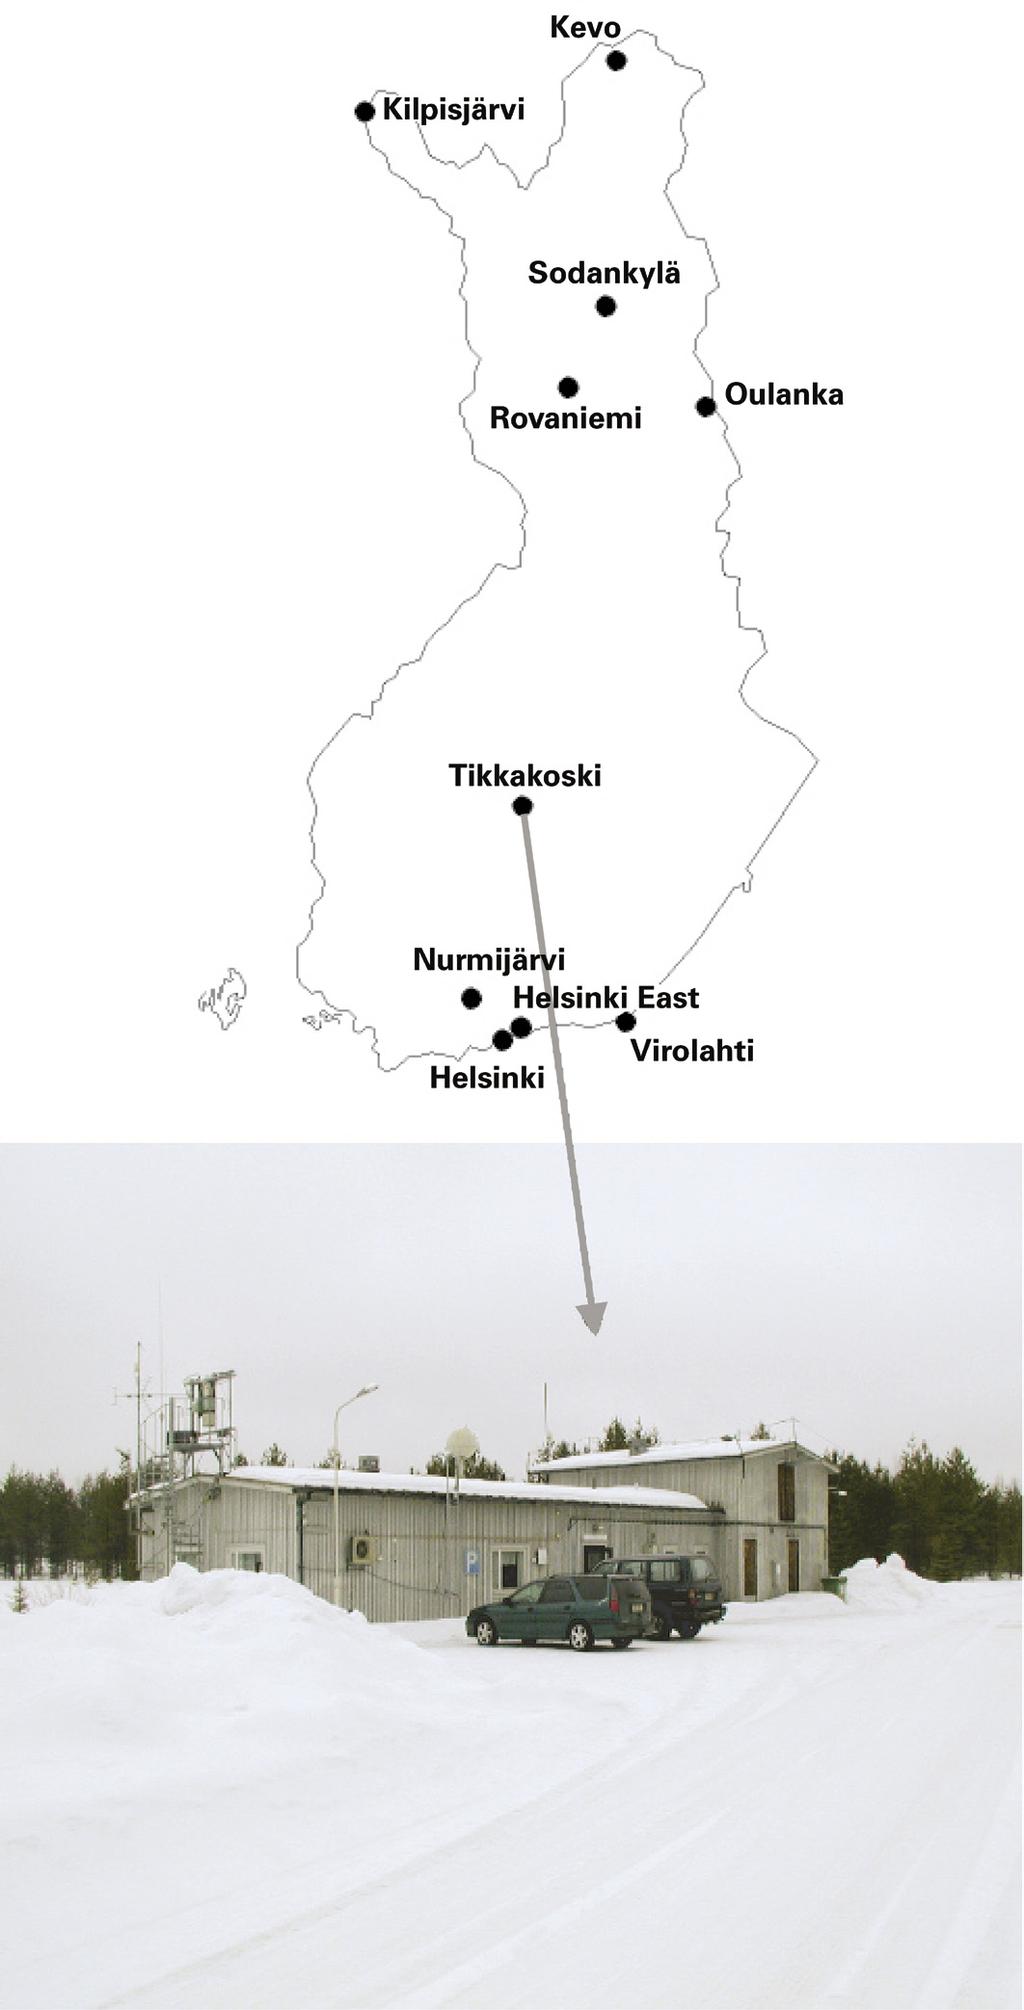 Kuva 4.1. Seuranta-asemat vuonna 2004. Bild 4.1. Bevakningsstationerna år 2004.